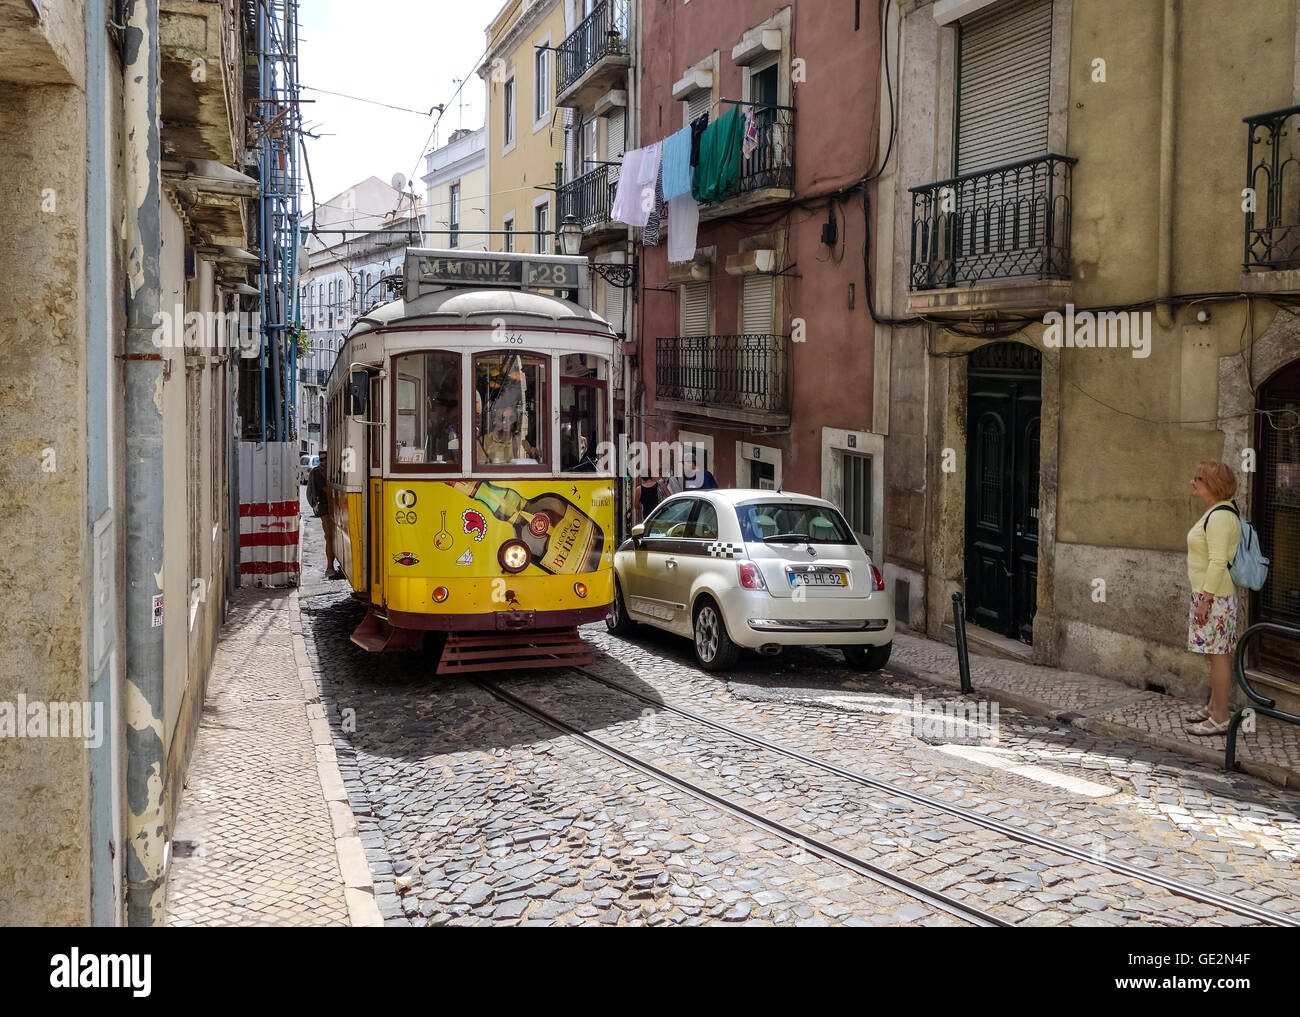 Lisbonne, Portugal - 19 septembre 2014 : Tram, le symbole de la ville dans rue étroite de Lisbonne. Banque D'Images